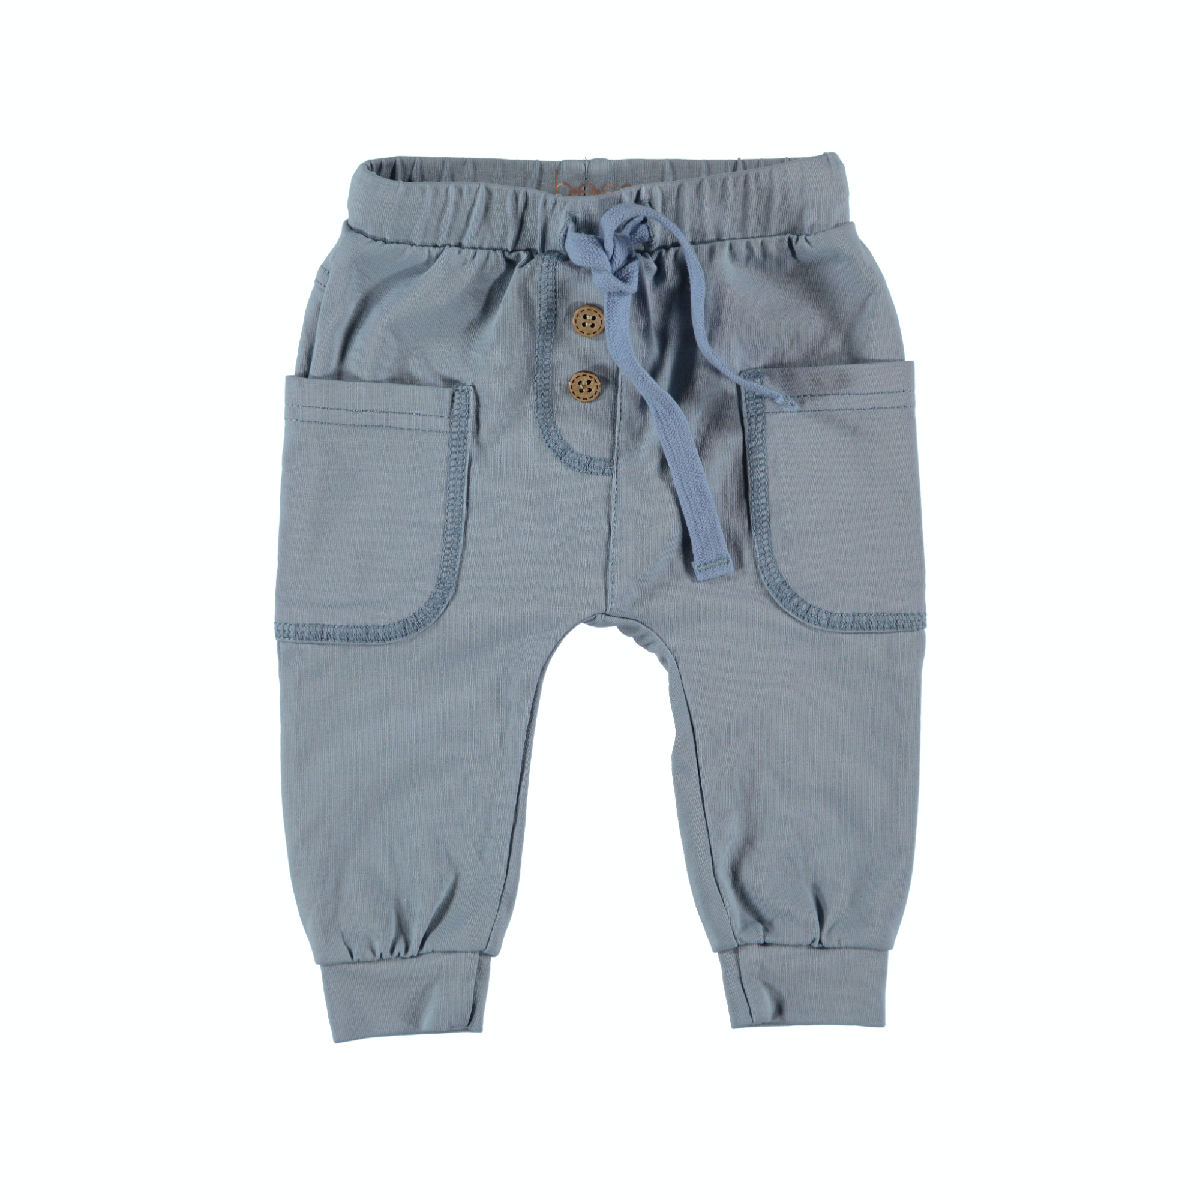 Jongens Pants with Pockets van B.E.S.S. in de kleur Lightblue in maat 80.